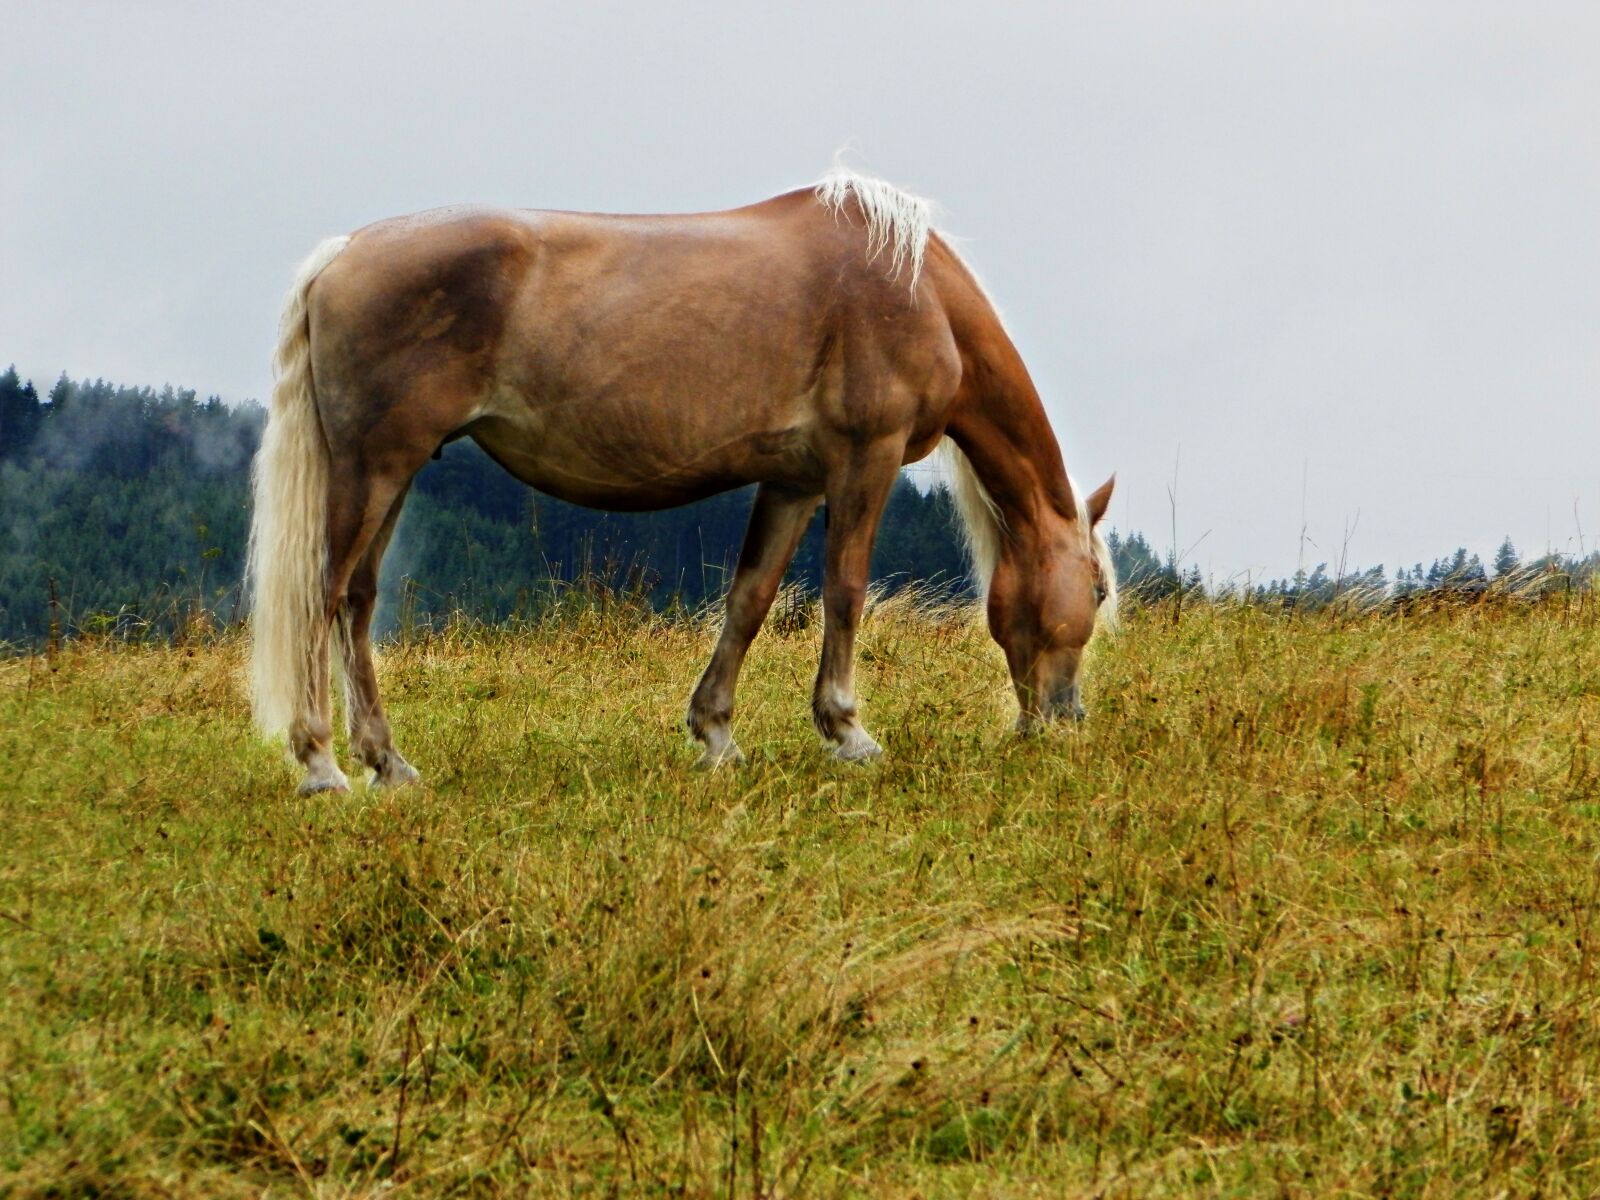 Olympus SP-620UZ sample photo. Haflinger, pasture, horse photography